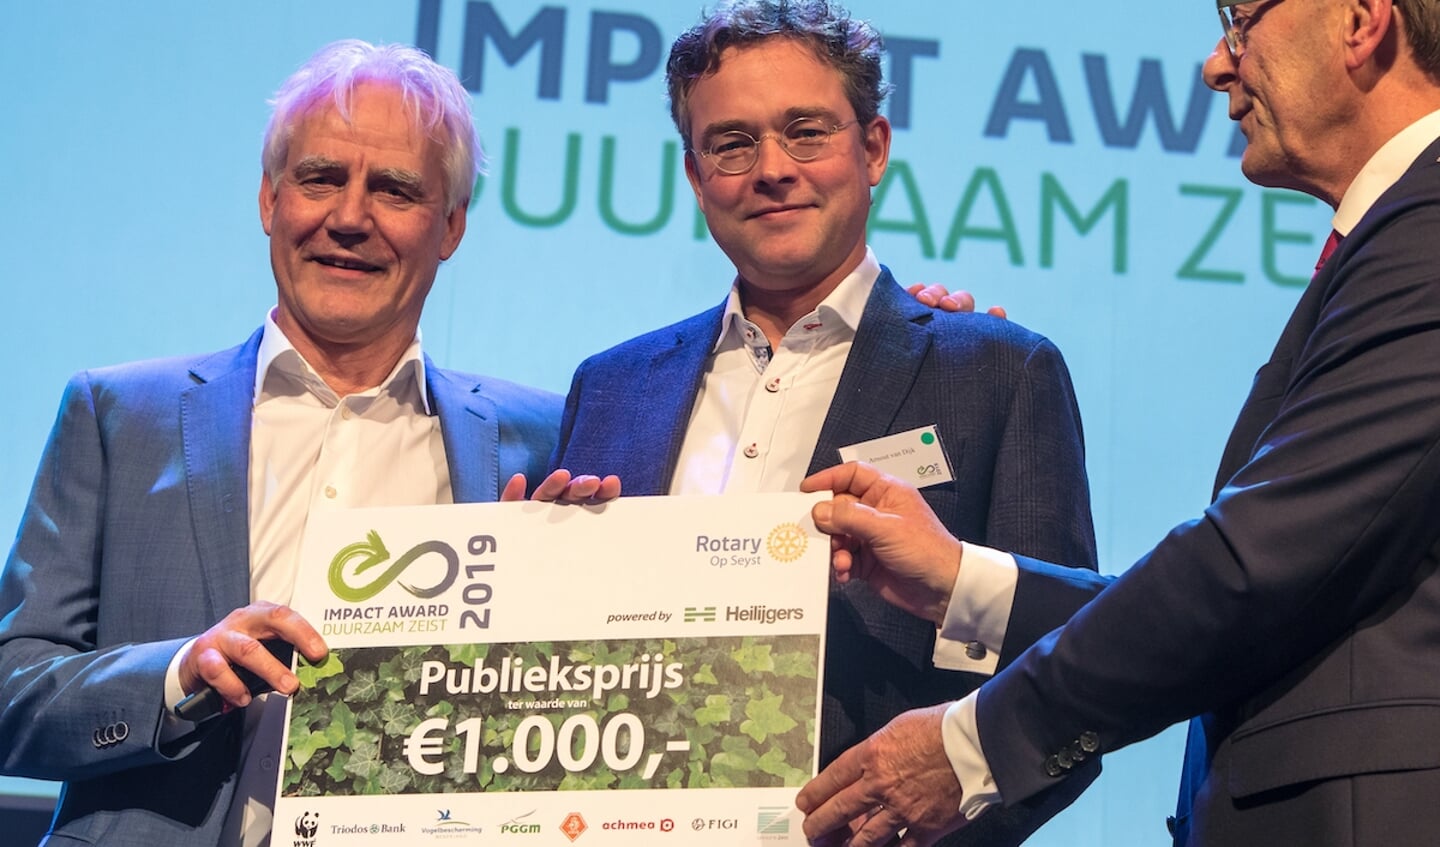 Burgemeester Janssen reikte in 2019 de Impact Award uit aan onder andere Arnout van Dijk van Samen Slim Rijden Zeist.